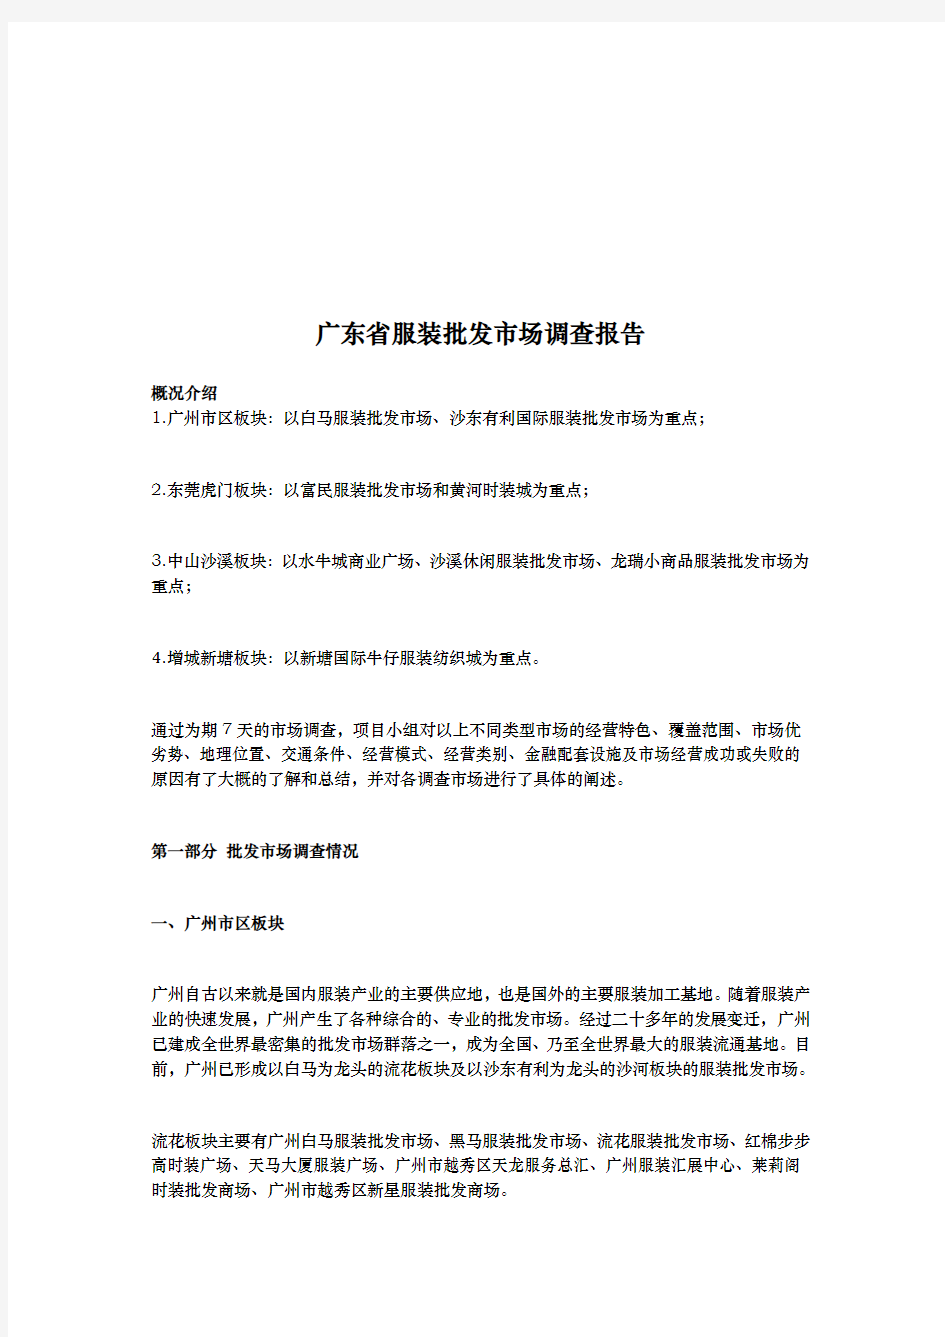 广东省服装批发市场调查报告范例